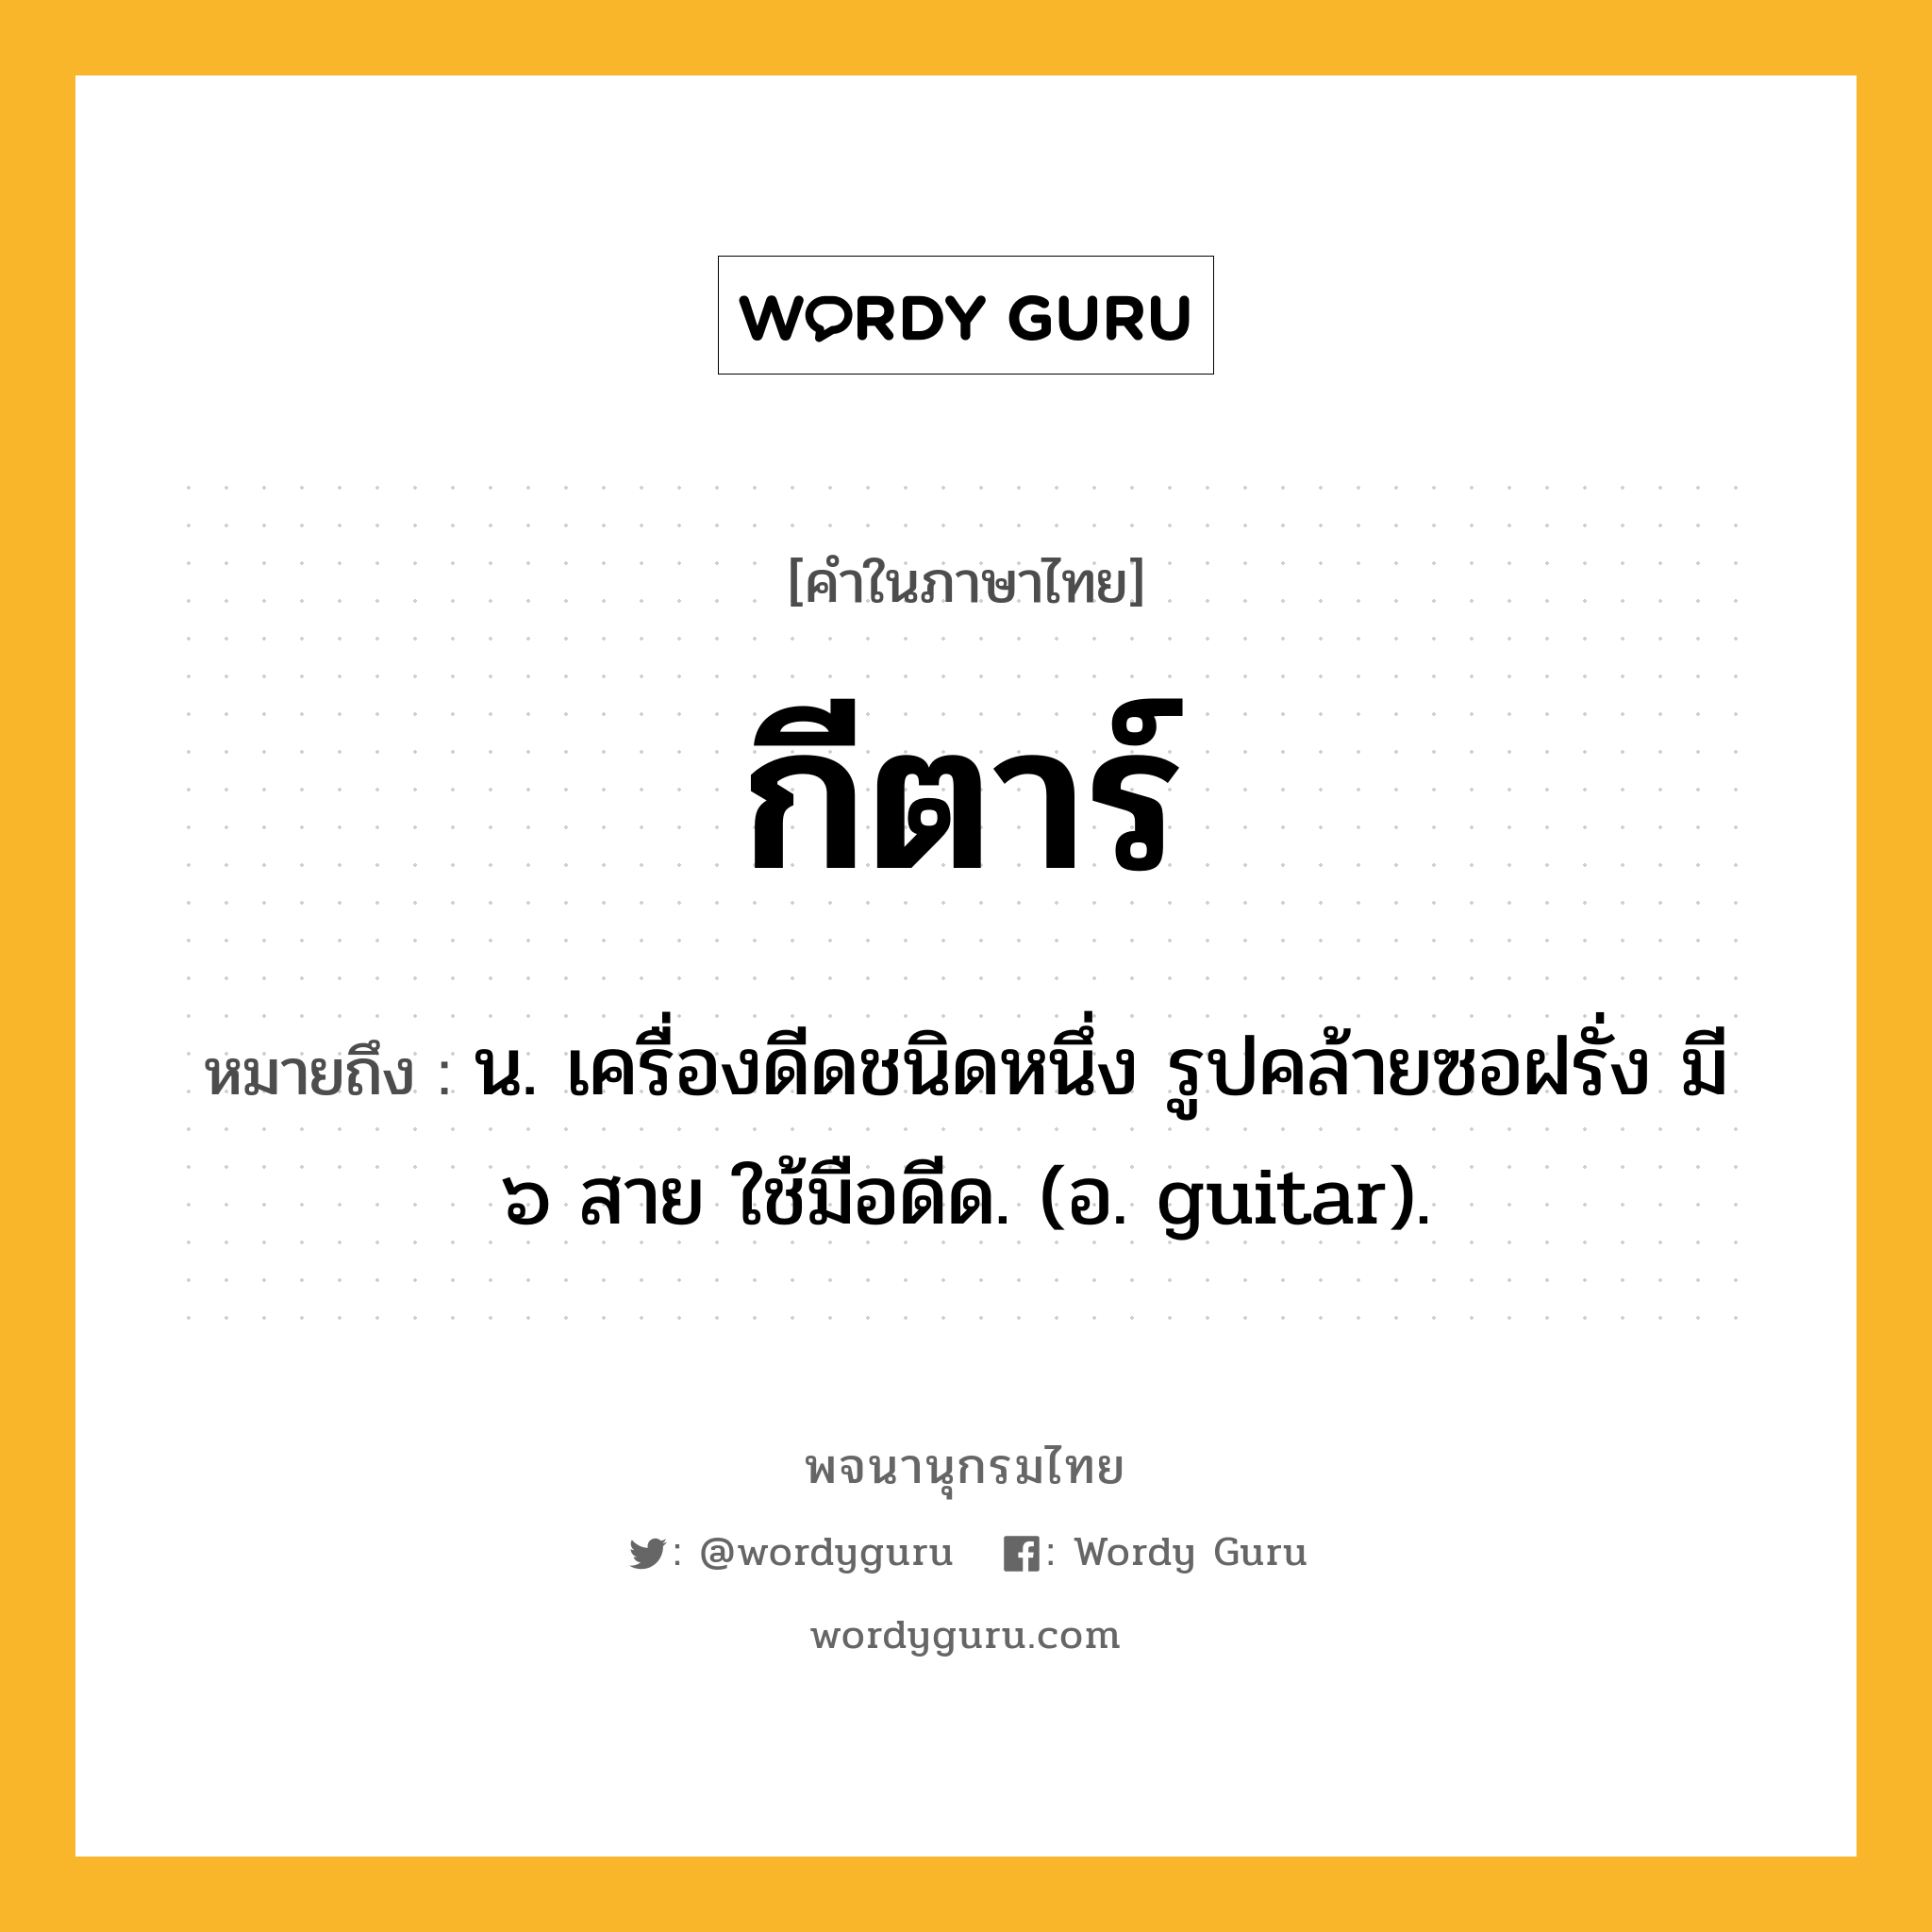 กีตาร์ หมายถึงอะไร?, คำในภาษาไทย กีตาร์ หมายถึง น. เครื่องดีดชนิดหนึ่ง รูปคล้ายซอฝรั่ง มี ๖ สาย ใช้มือดีด. (อ. guitar).